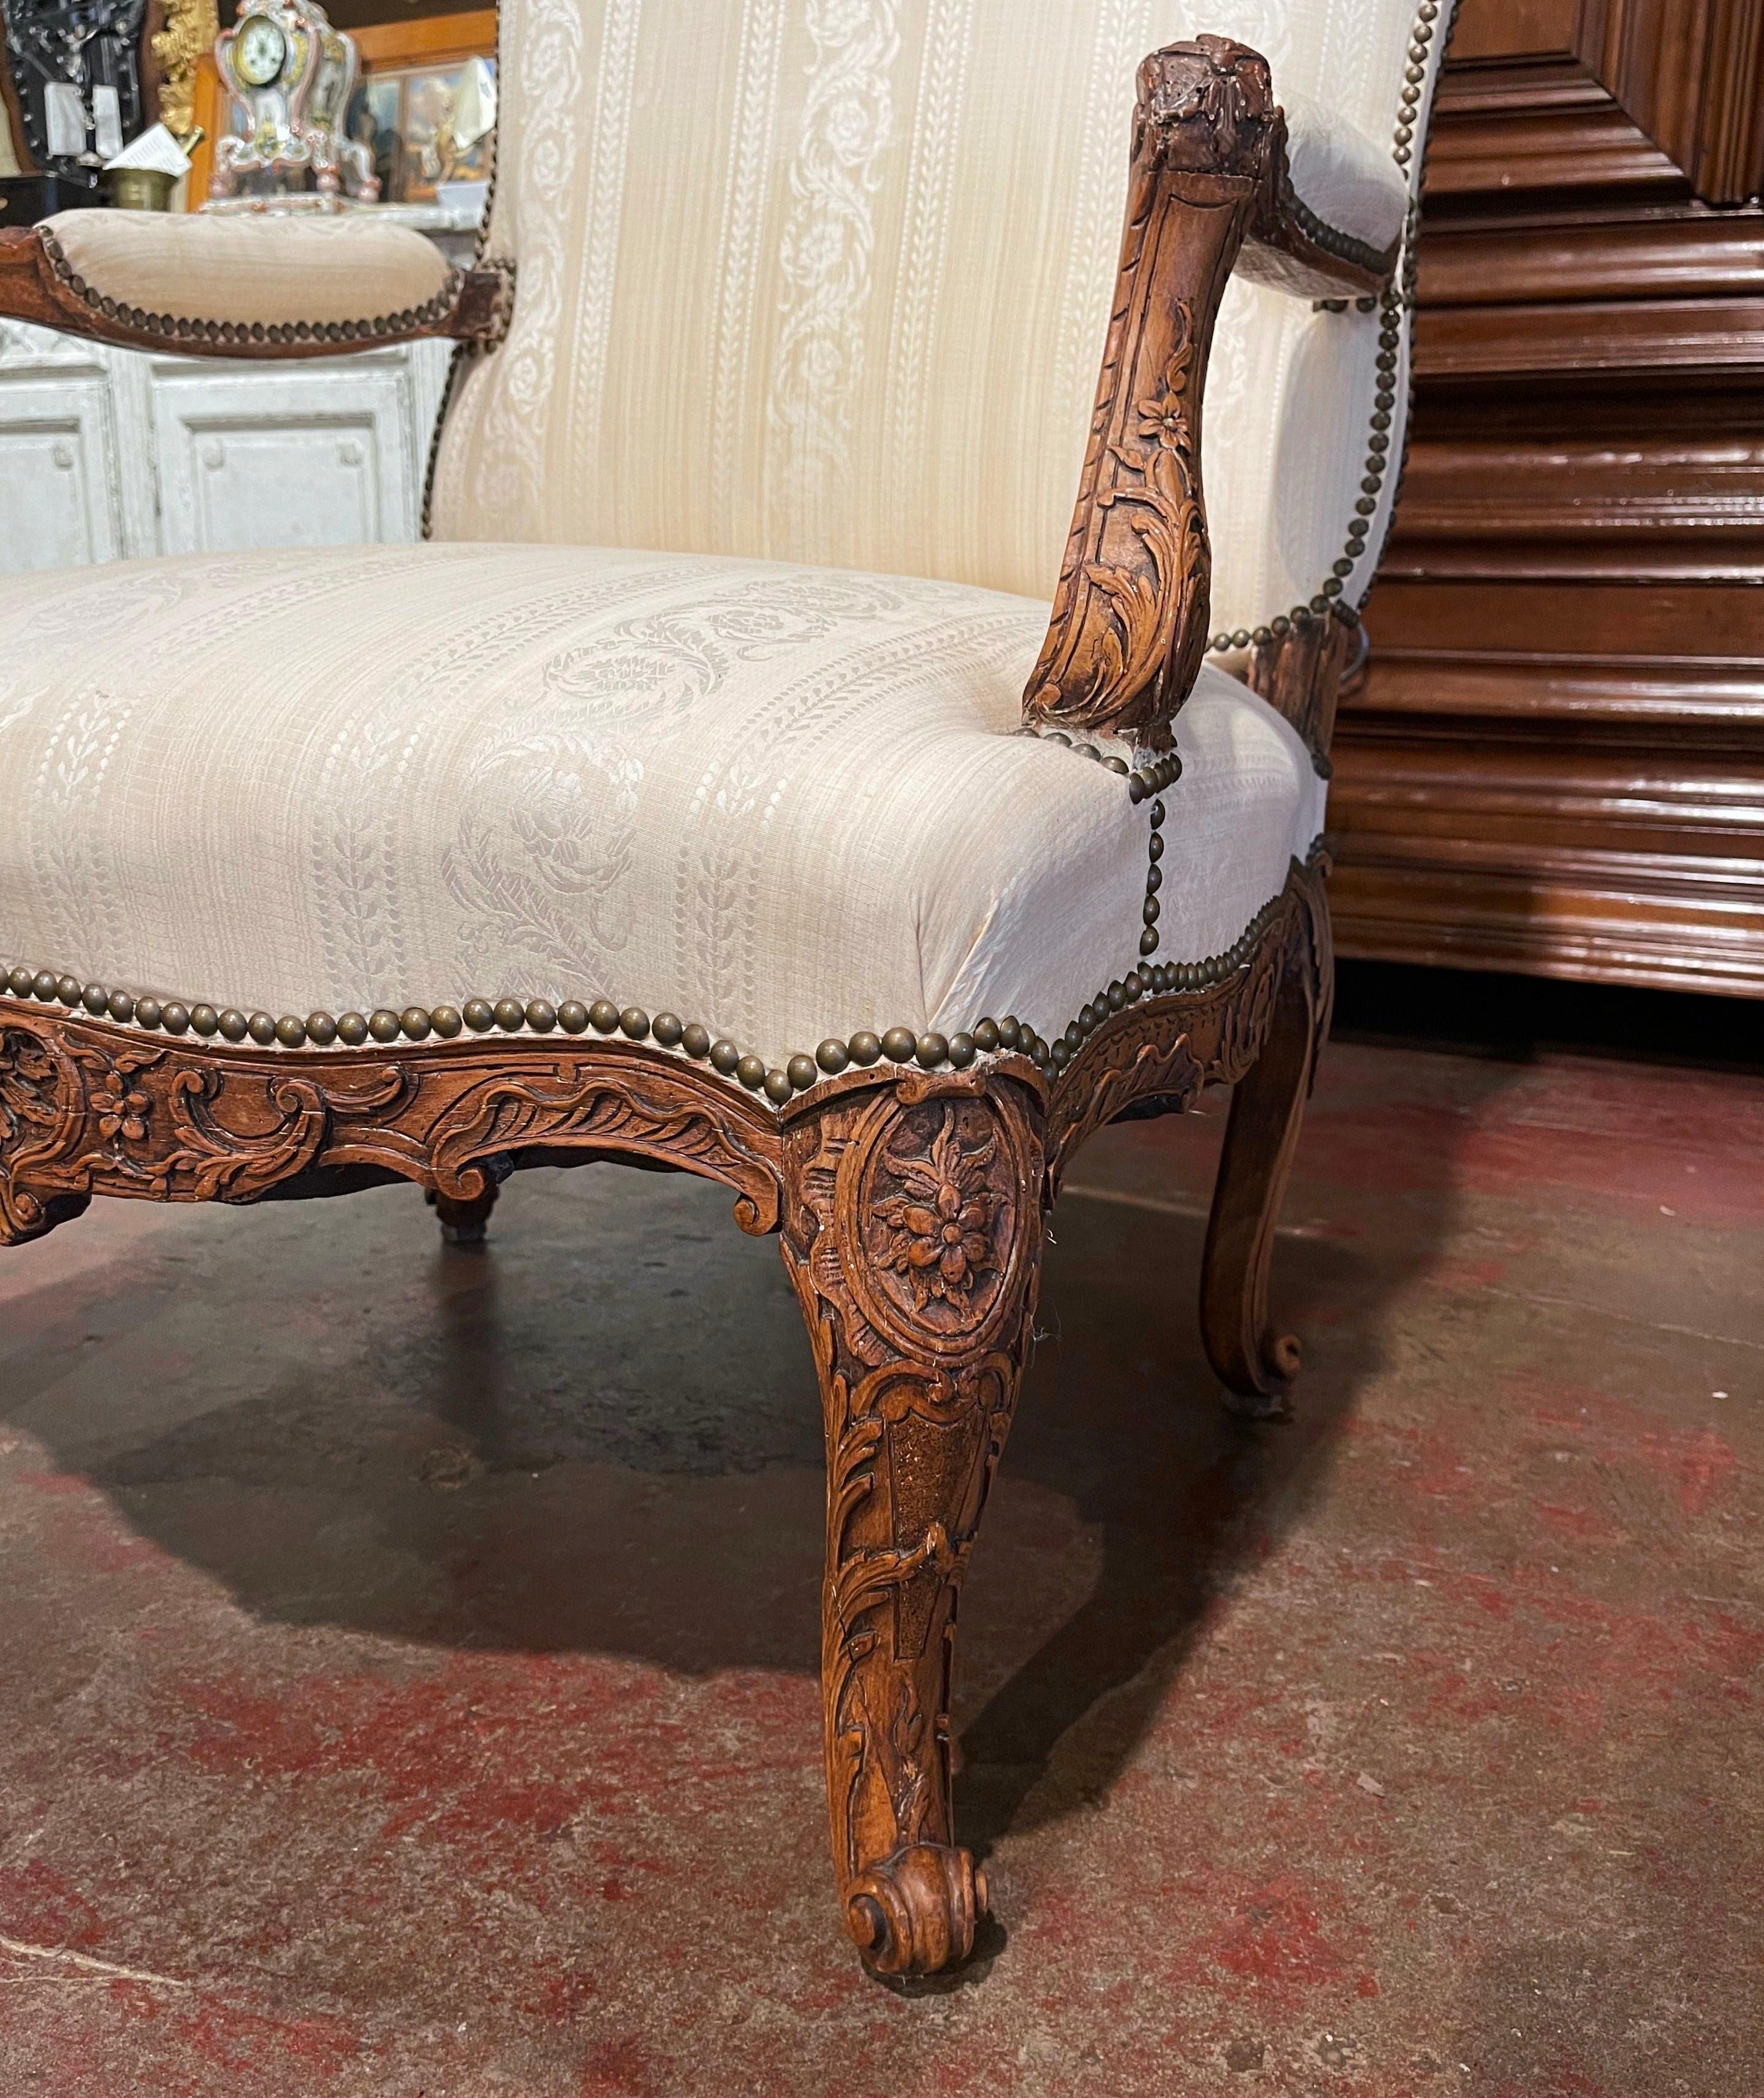 Décorez un bureau ou une chambre à coucher avec cet élégant fauteuil ancien. Fabriqué dans le sud de la France vers 1860, ce fauteuil confortable repose sur des pieds cabriole décorés de feuilles d'acanthe à l'épaule et se terminant par des pieds en